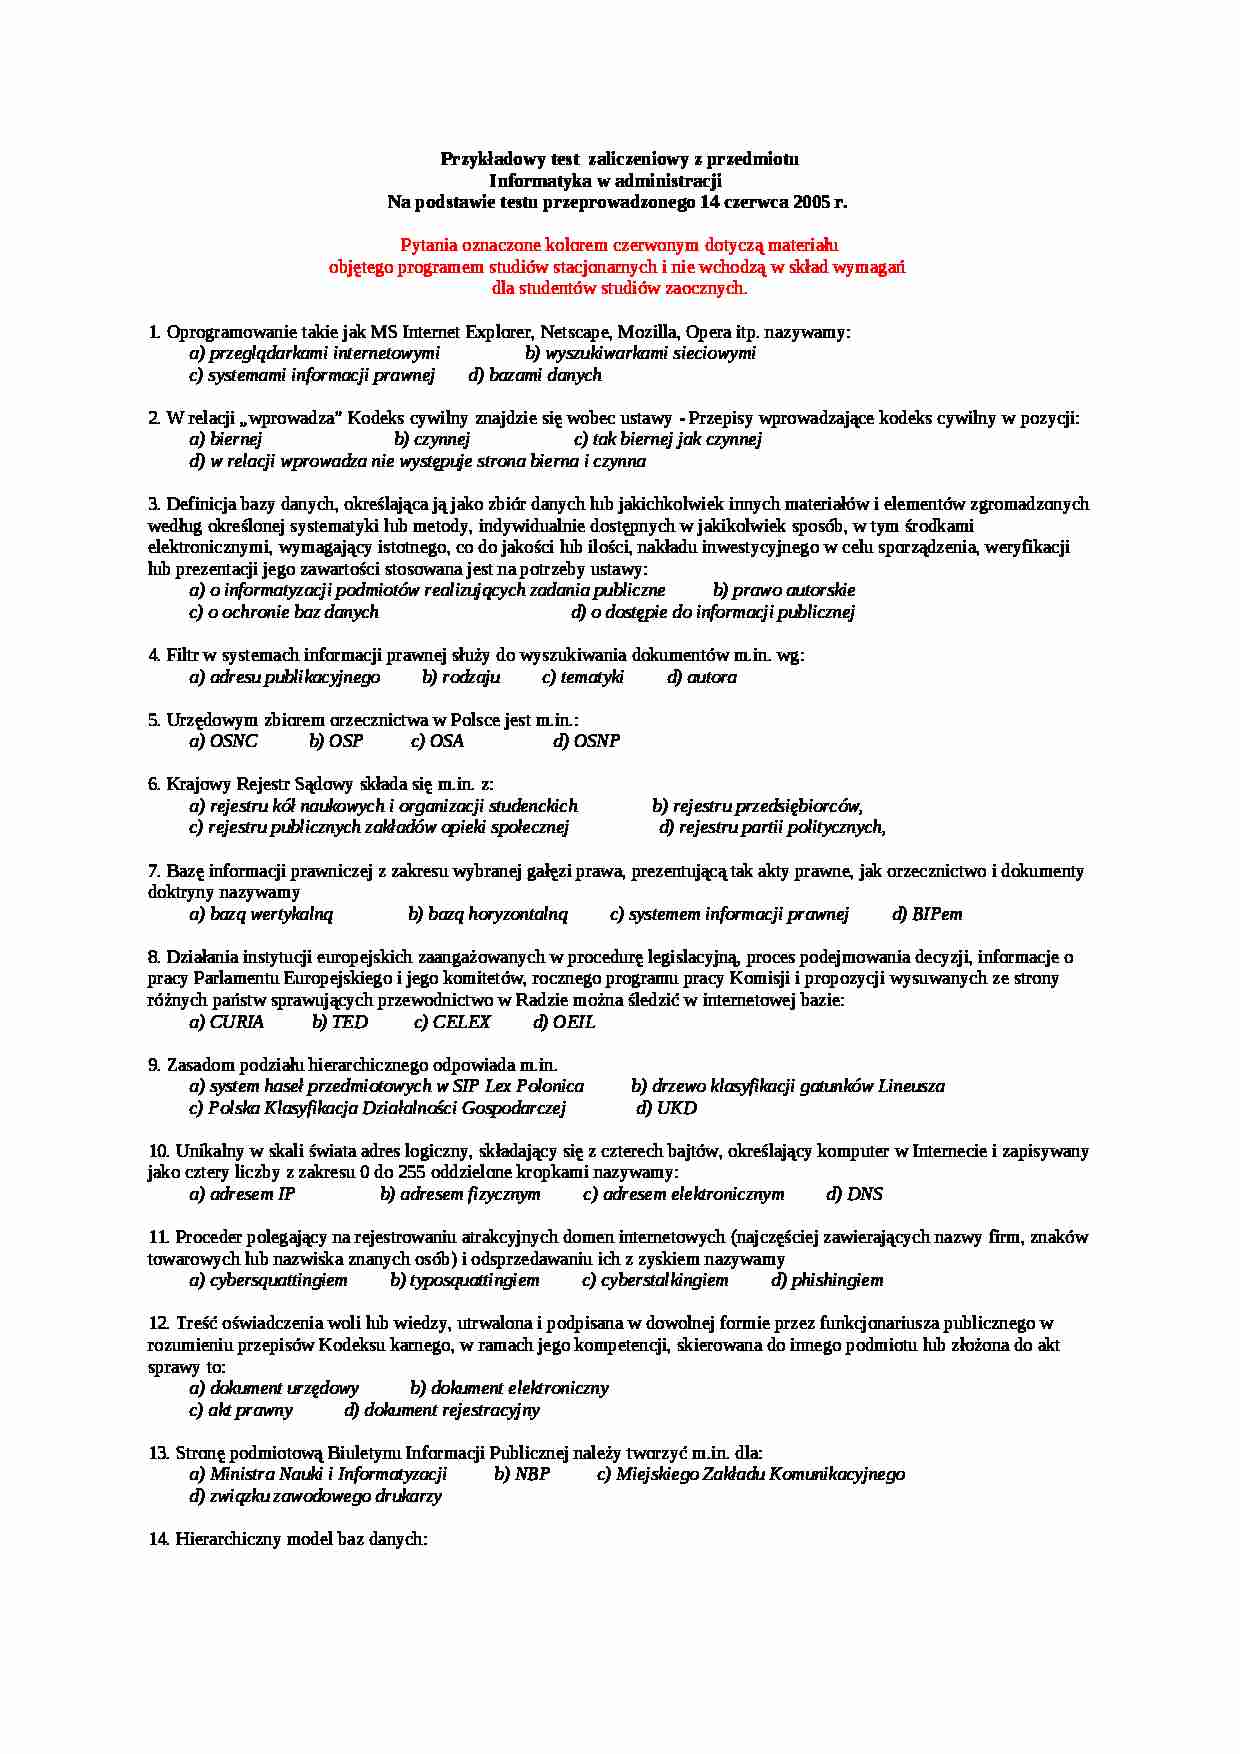 Informatyka prawnicza - testy 2005 - strona 1